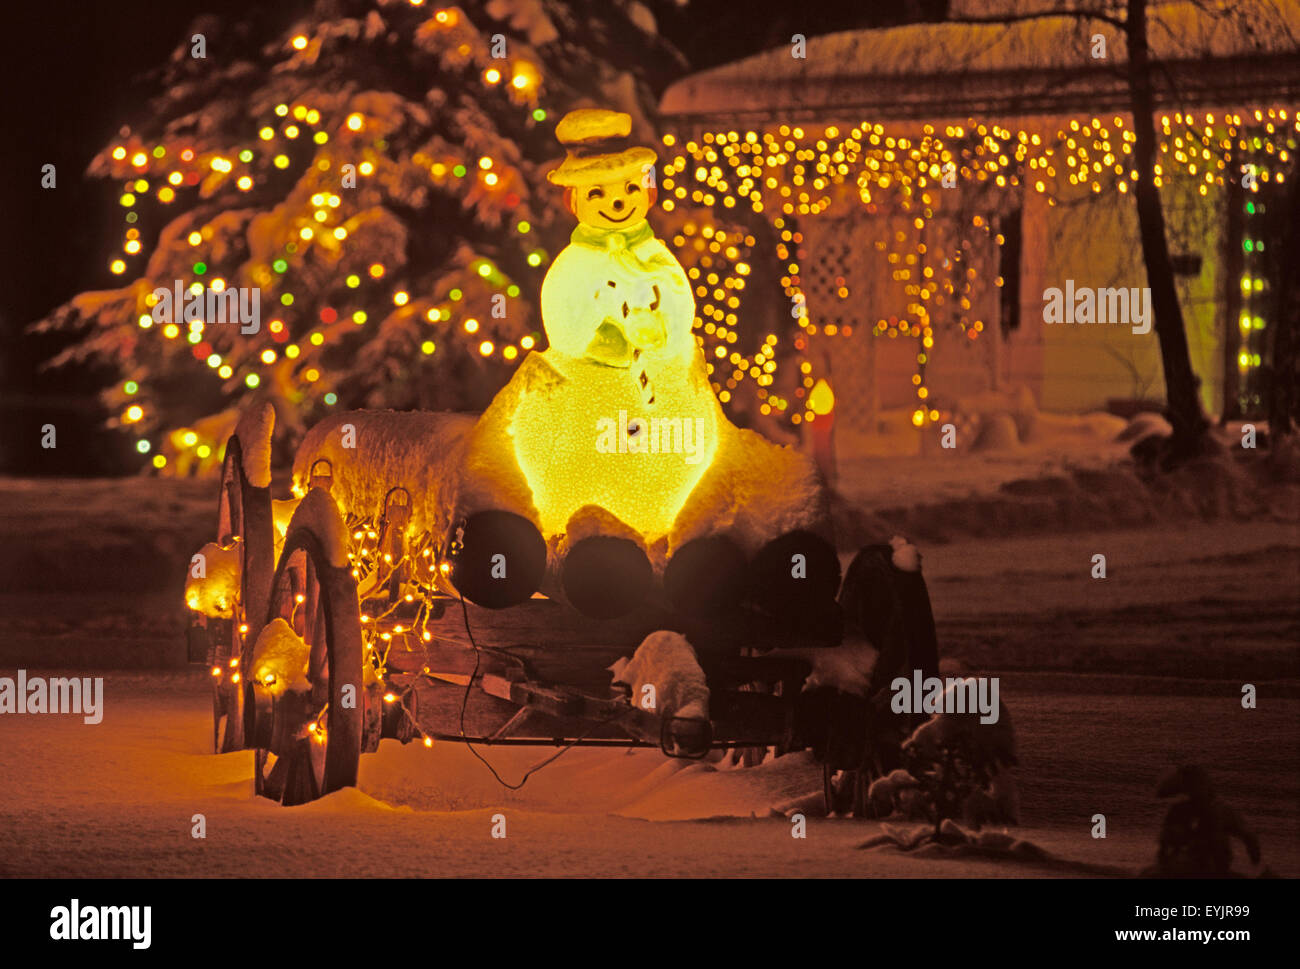 Weihnachts lichter mit schneemann auf altem holzwagen|luces de Navidad y el muñeco de nieve en el viejo vagón con registros Foto de stock